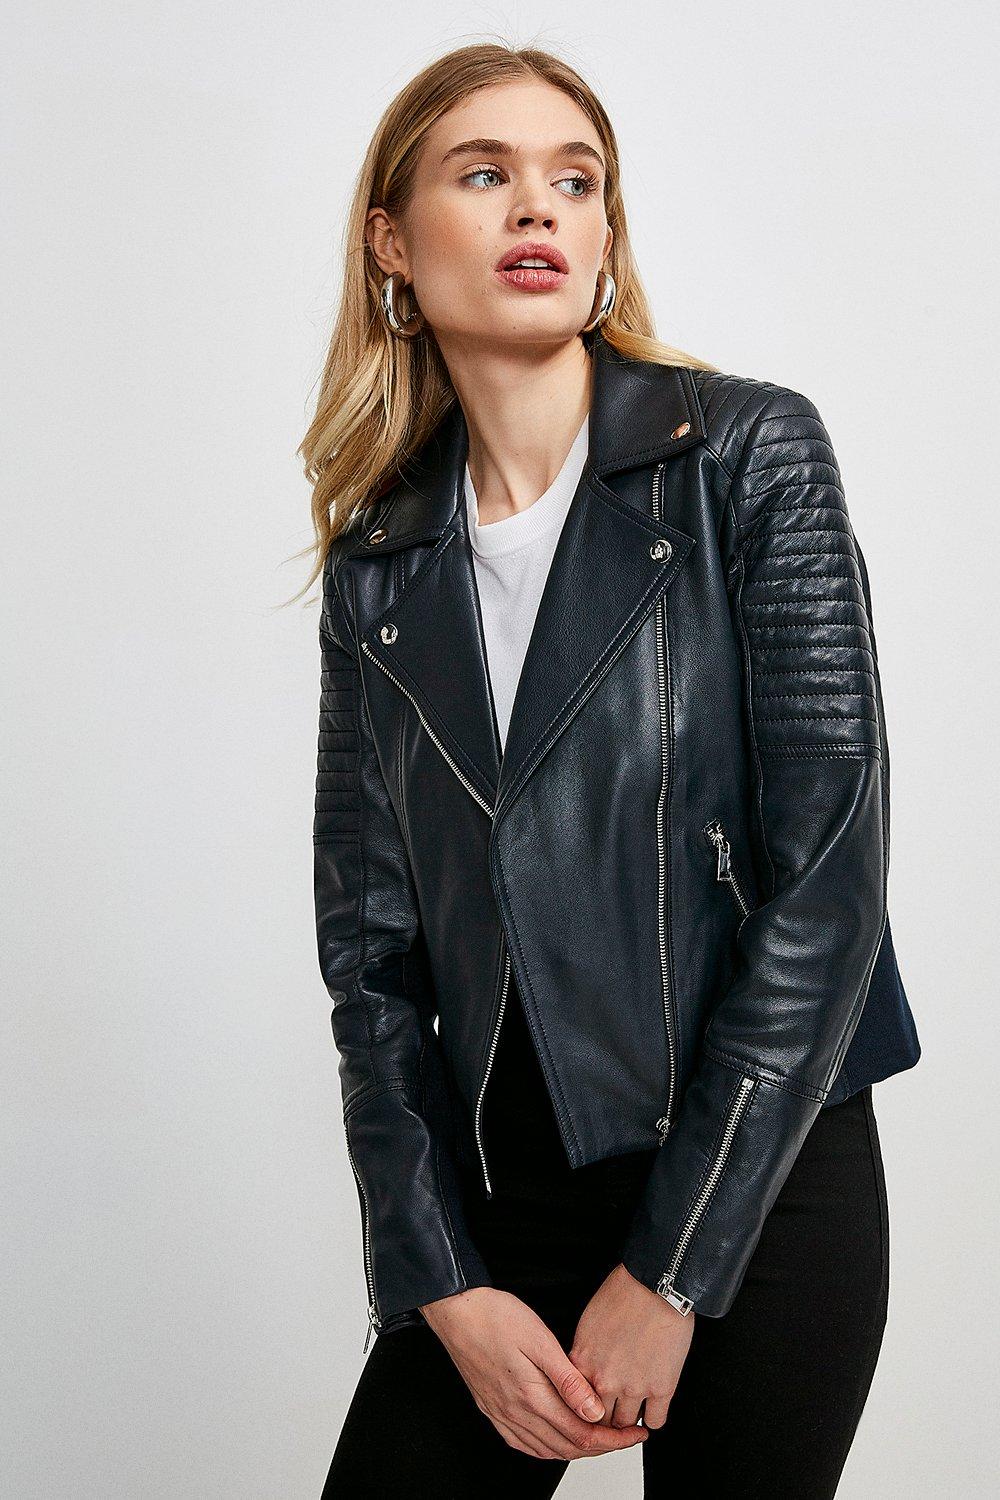 Karen Millen Leather Jacket Top Sellers, 59% OFF | www 